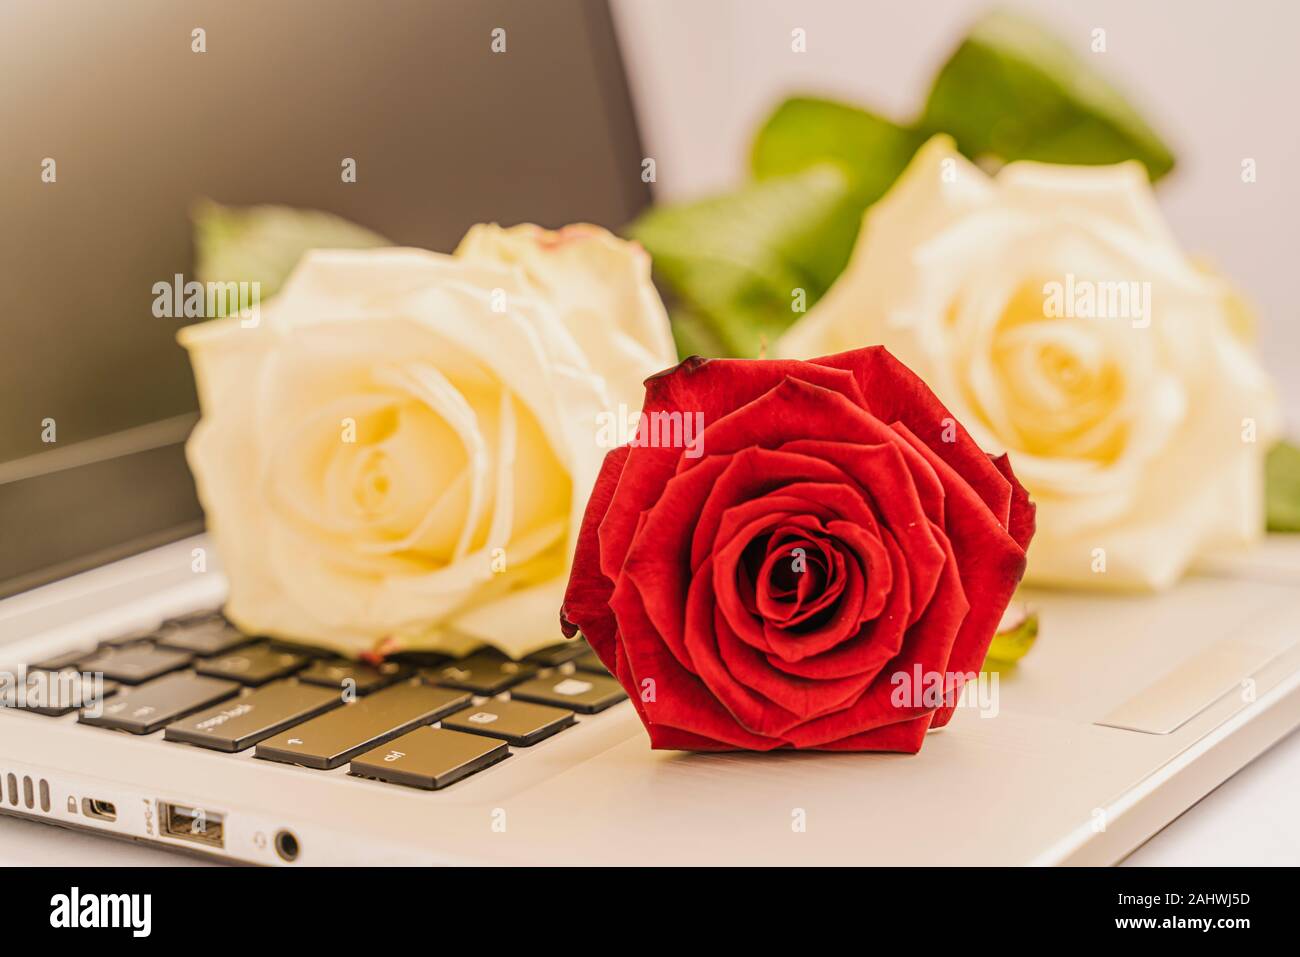 Blumenstrauß aus frische weiße und rote Rosen auf der Tastatur des Laptops auf leicht rosa unterlegt, Valentine, Konzept. Ein bisschen Romantik im Alltag. Horizont Stockfoto